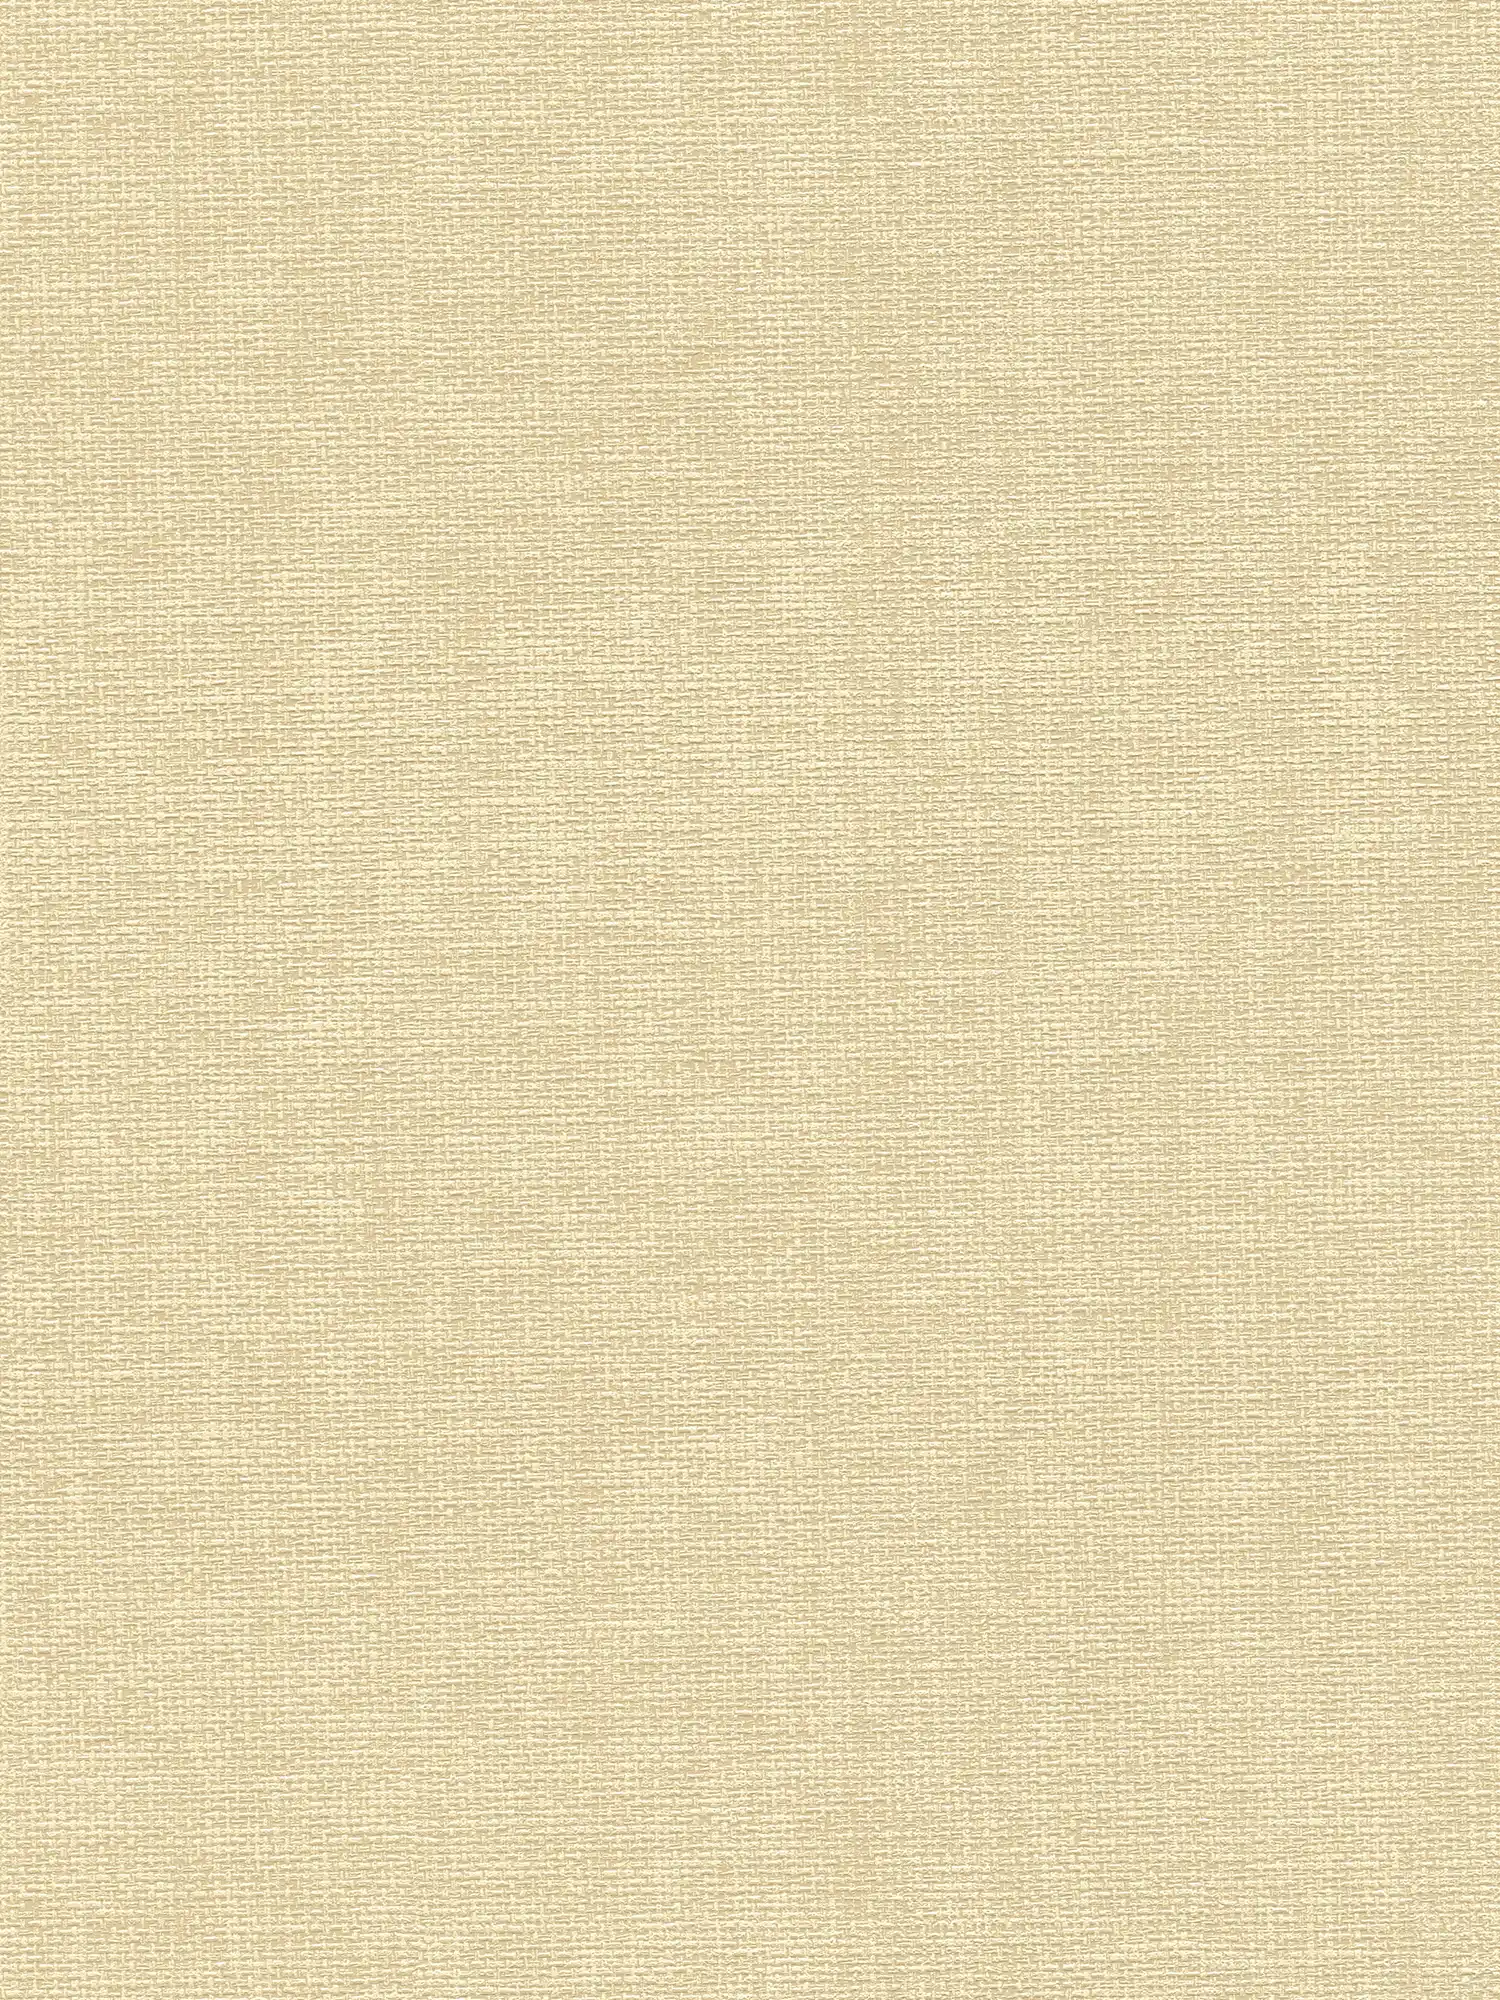 Papier peint à structure tissée de style scandinave - beige, jaune
